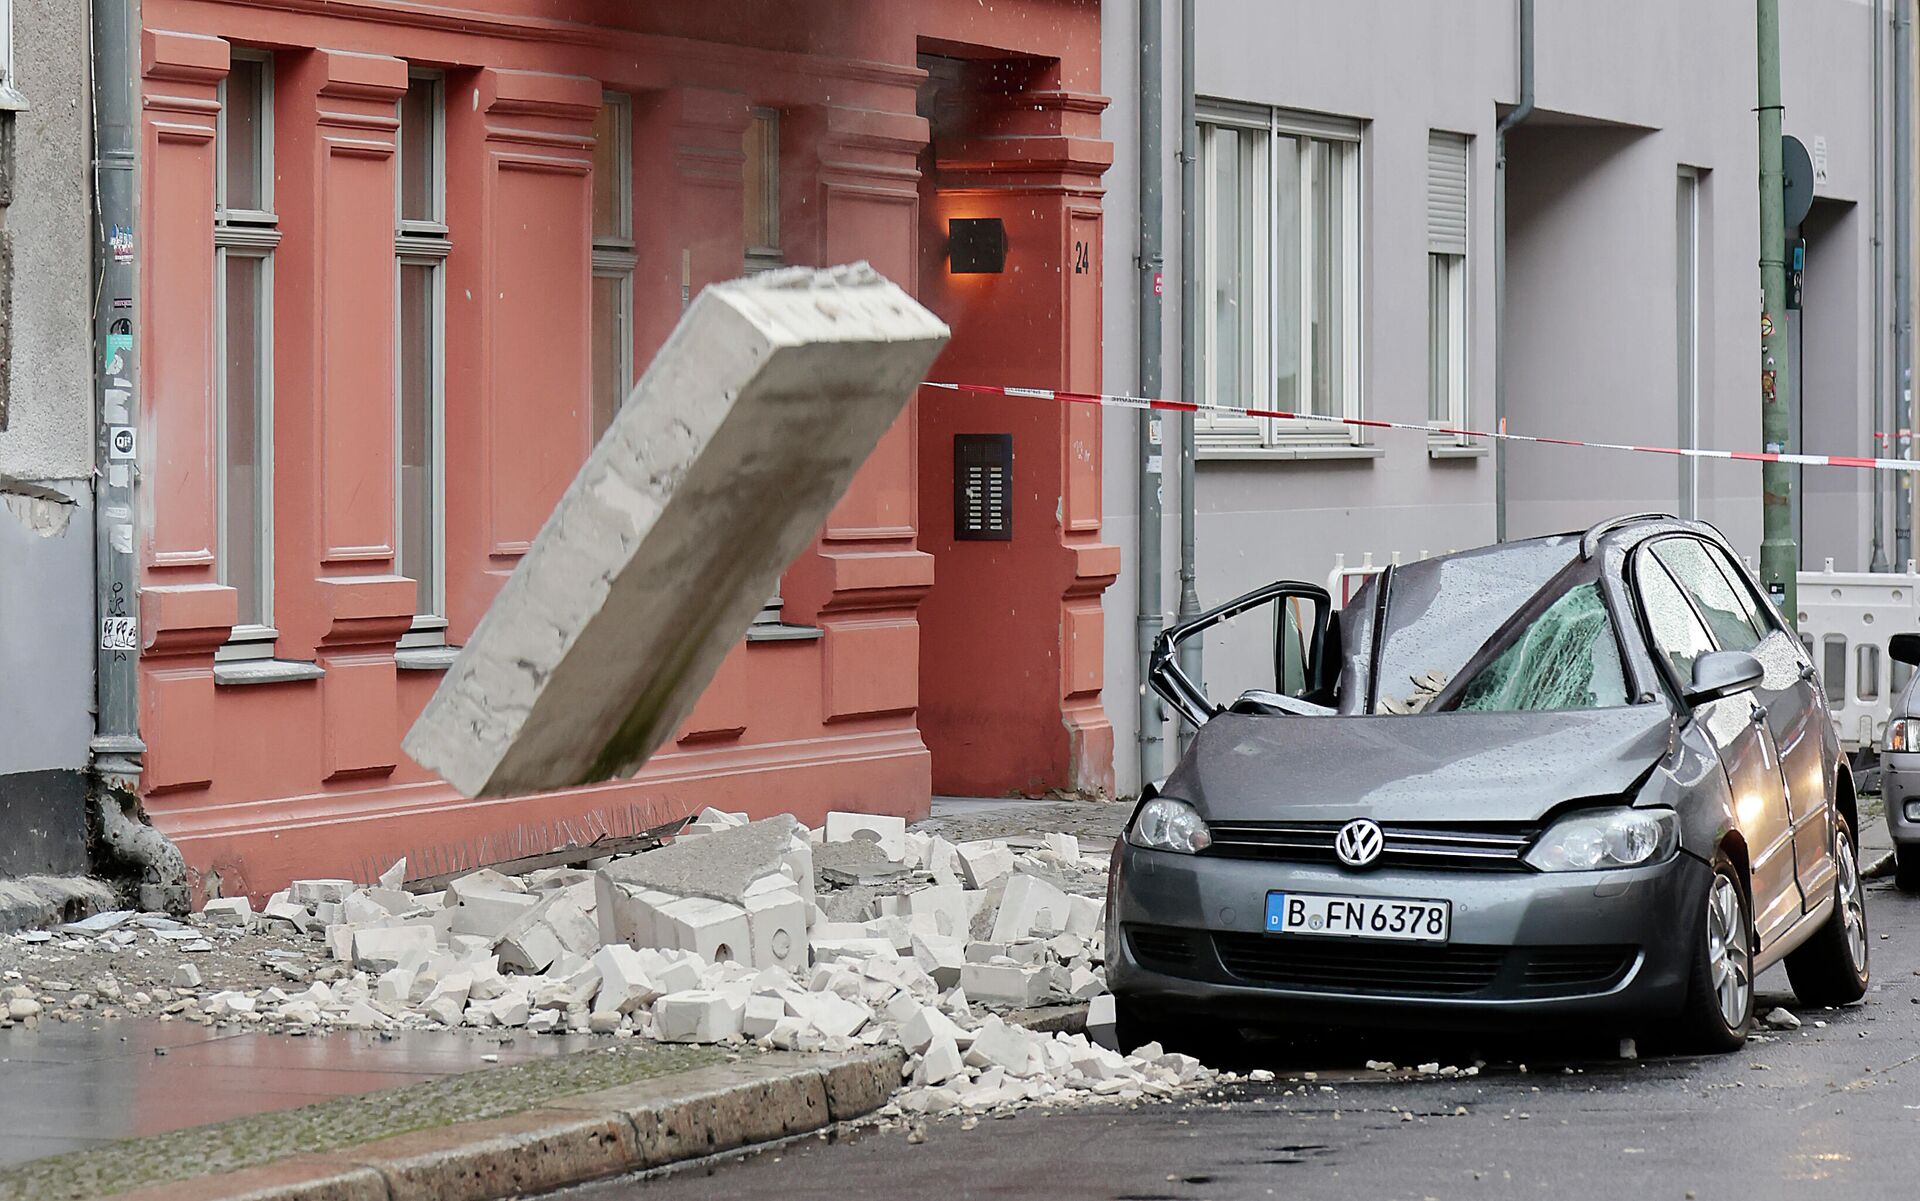 Parte de um muro danificado cai na calçada durante uma tempestade em Berlim, Alemanha, em 17 de fevereiro de 2022.  - Sputnik Brasil, 1920, 17.02.2022